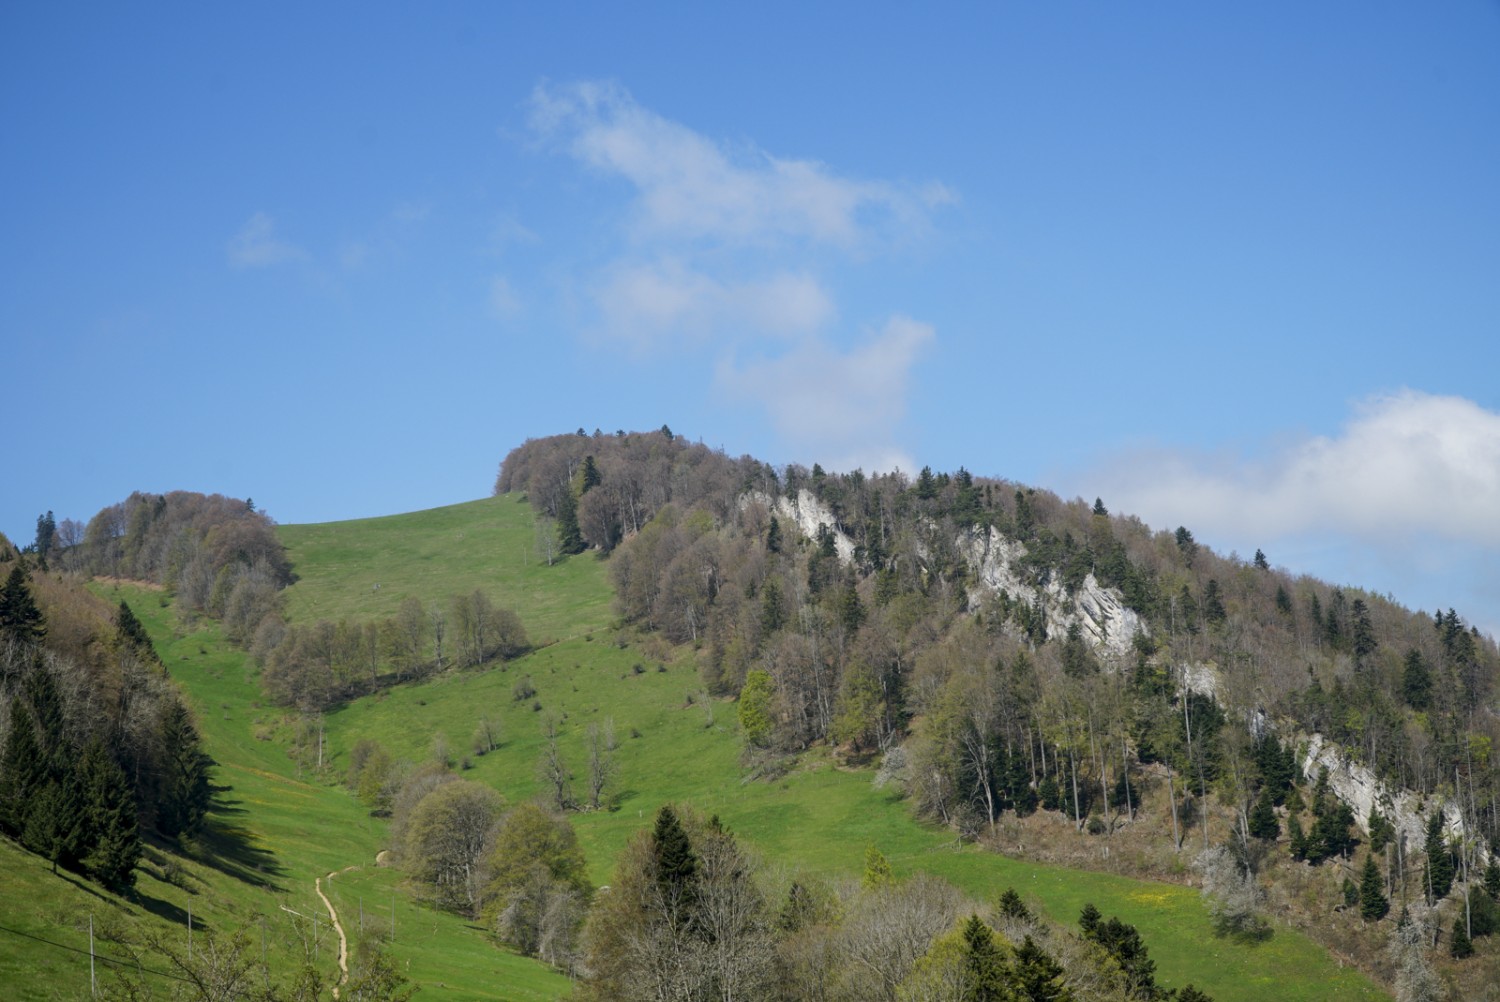 La cuvette qui s’étend d’est en ouest est caractéristique de la barrière montagneuse du Wasserfallen. Photo : Mia Hofmann